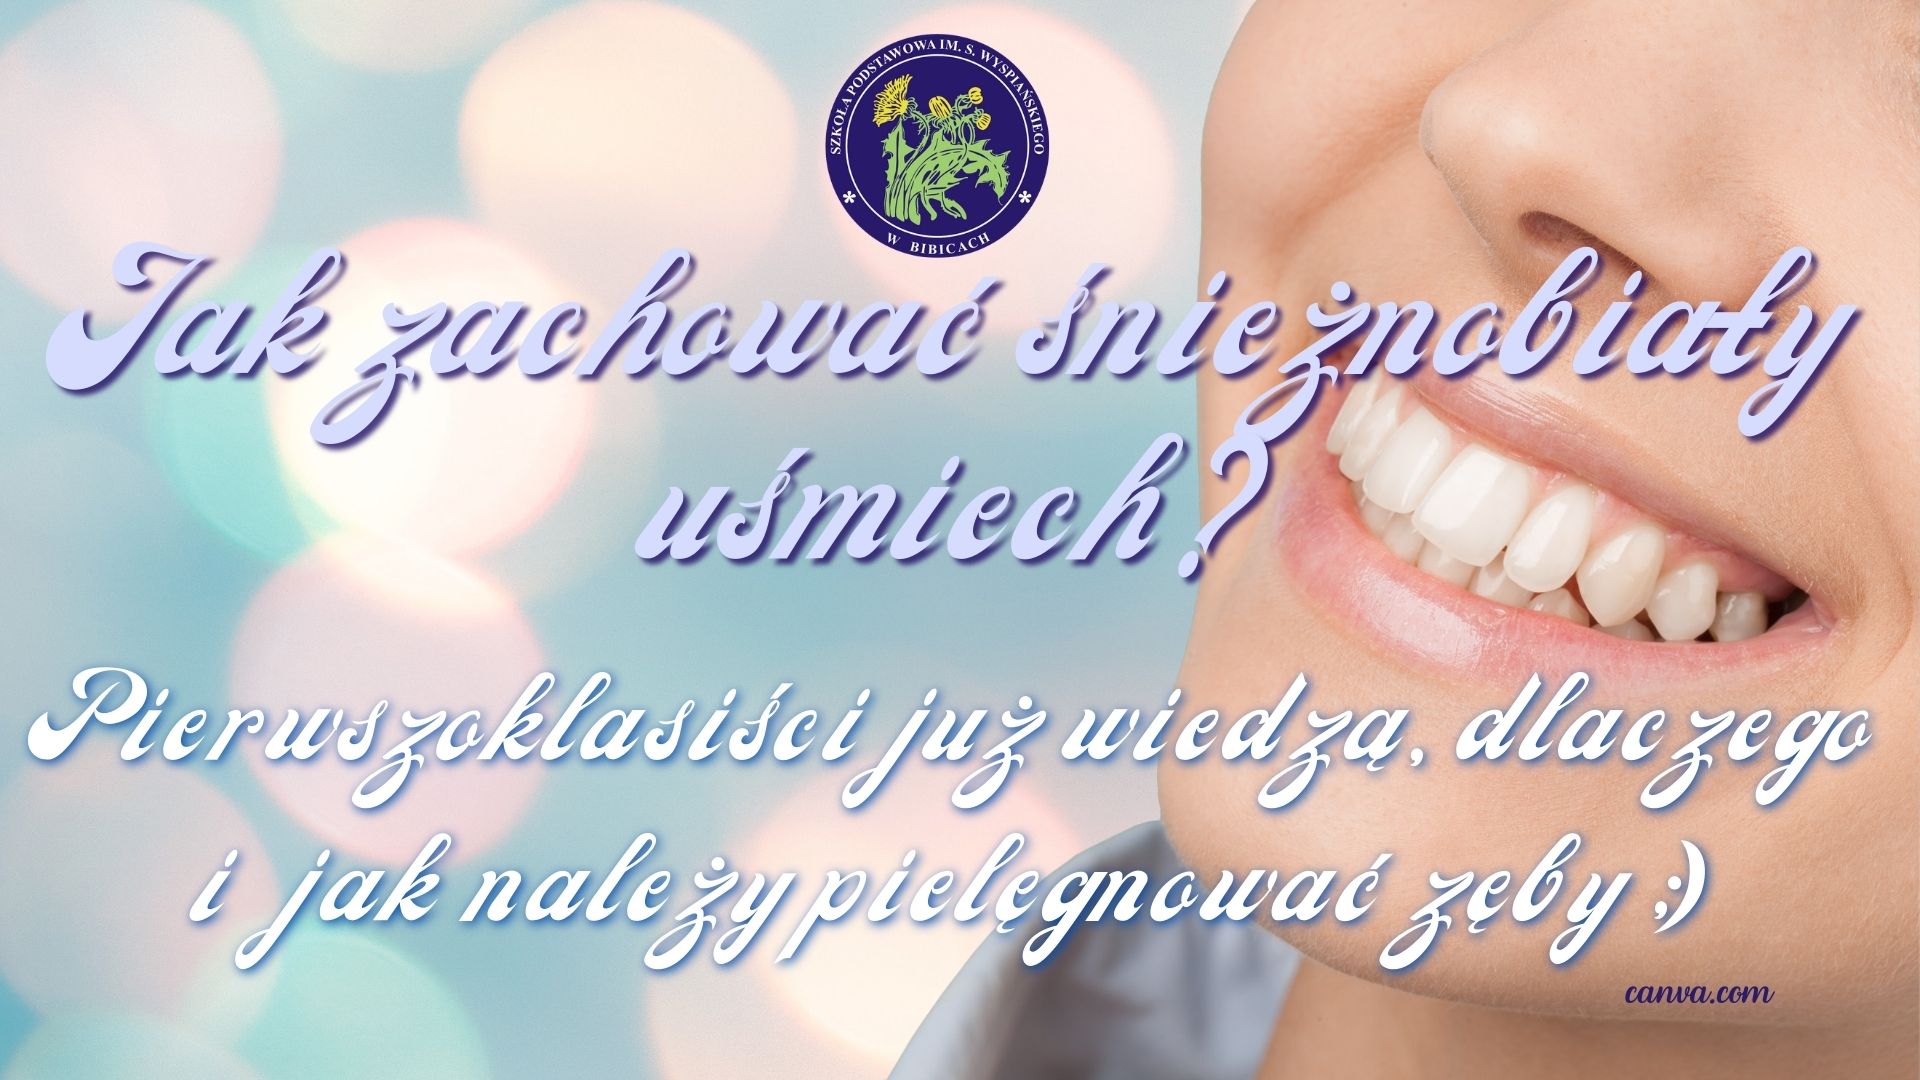 Jak zachować śnieżnobiały uśmiech? Pierwszoklasiści już wiedzą, dlaczego i jak należy pielęgnować zęby.